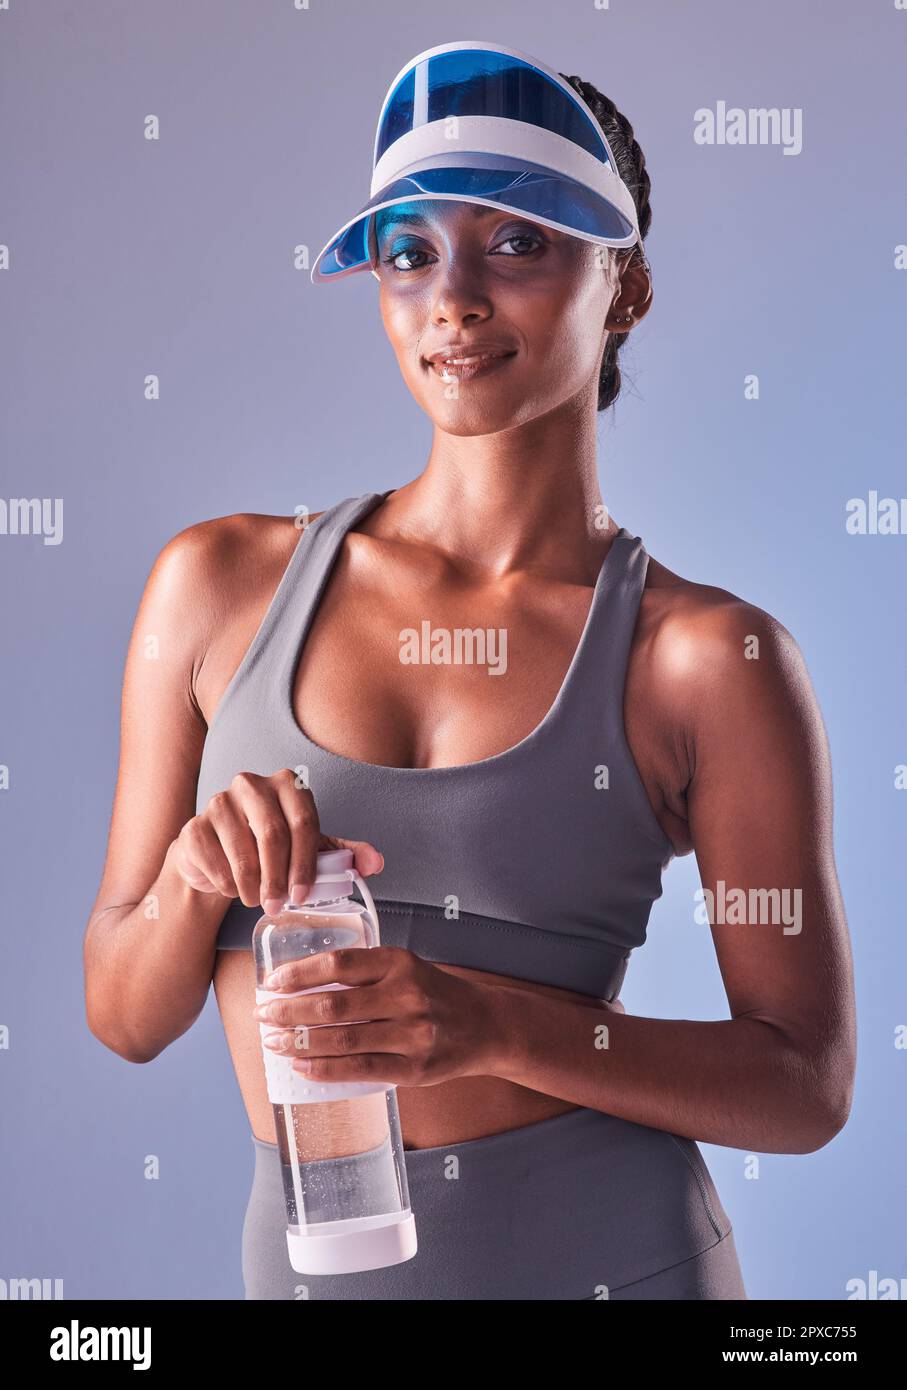 Guardate cosa può fare una sana quantità di disciplina. Studio shot di una giovane donna in forma che beve acqua in bottiglia su uno sfondo grigio. Foto Stock